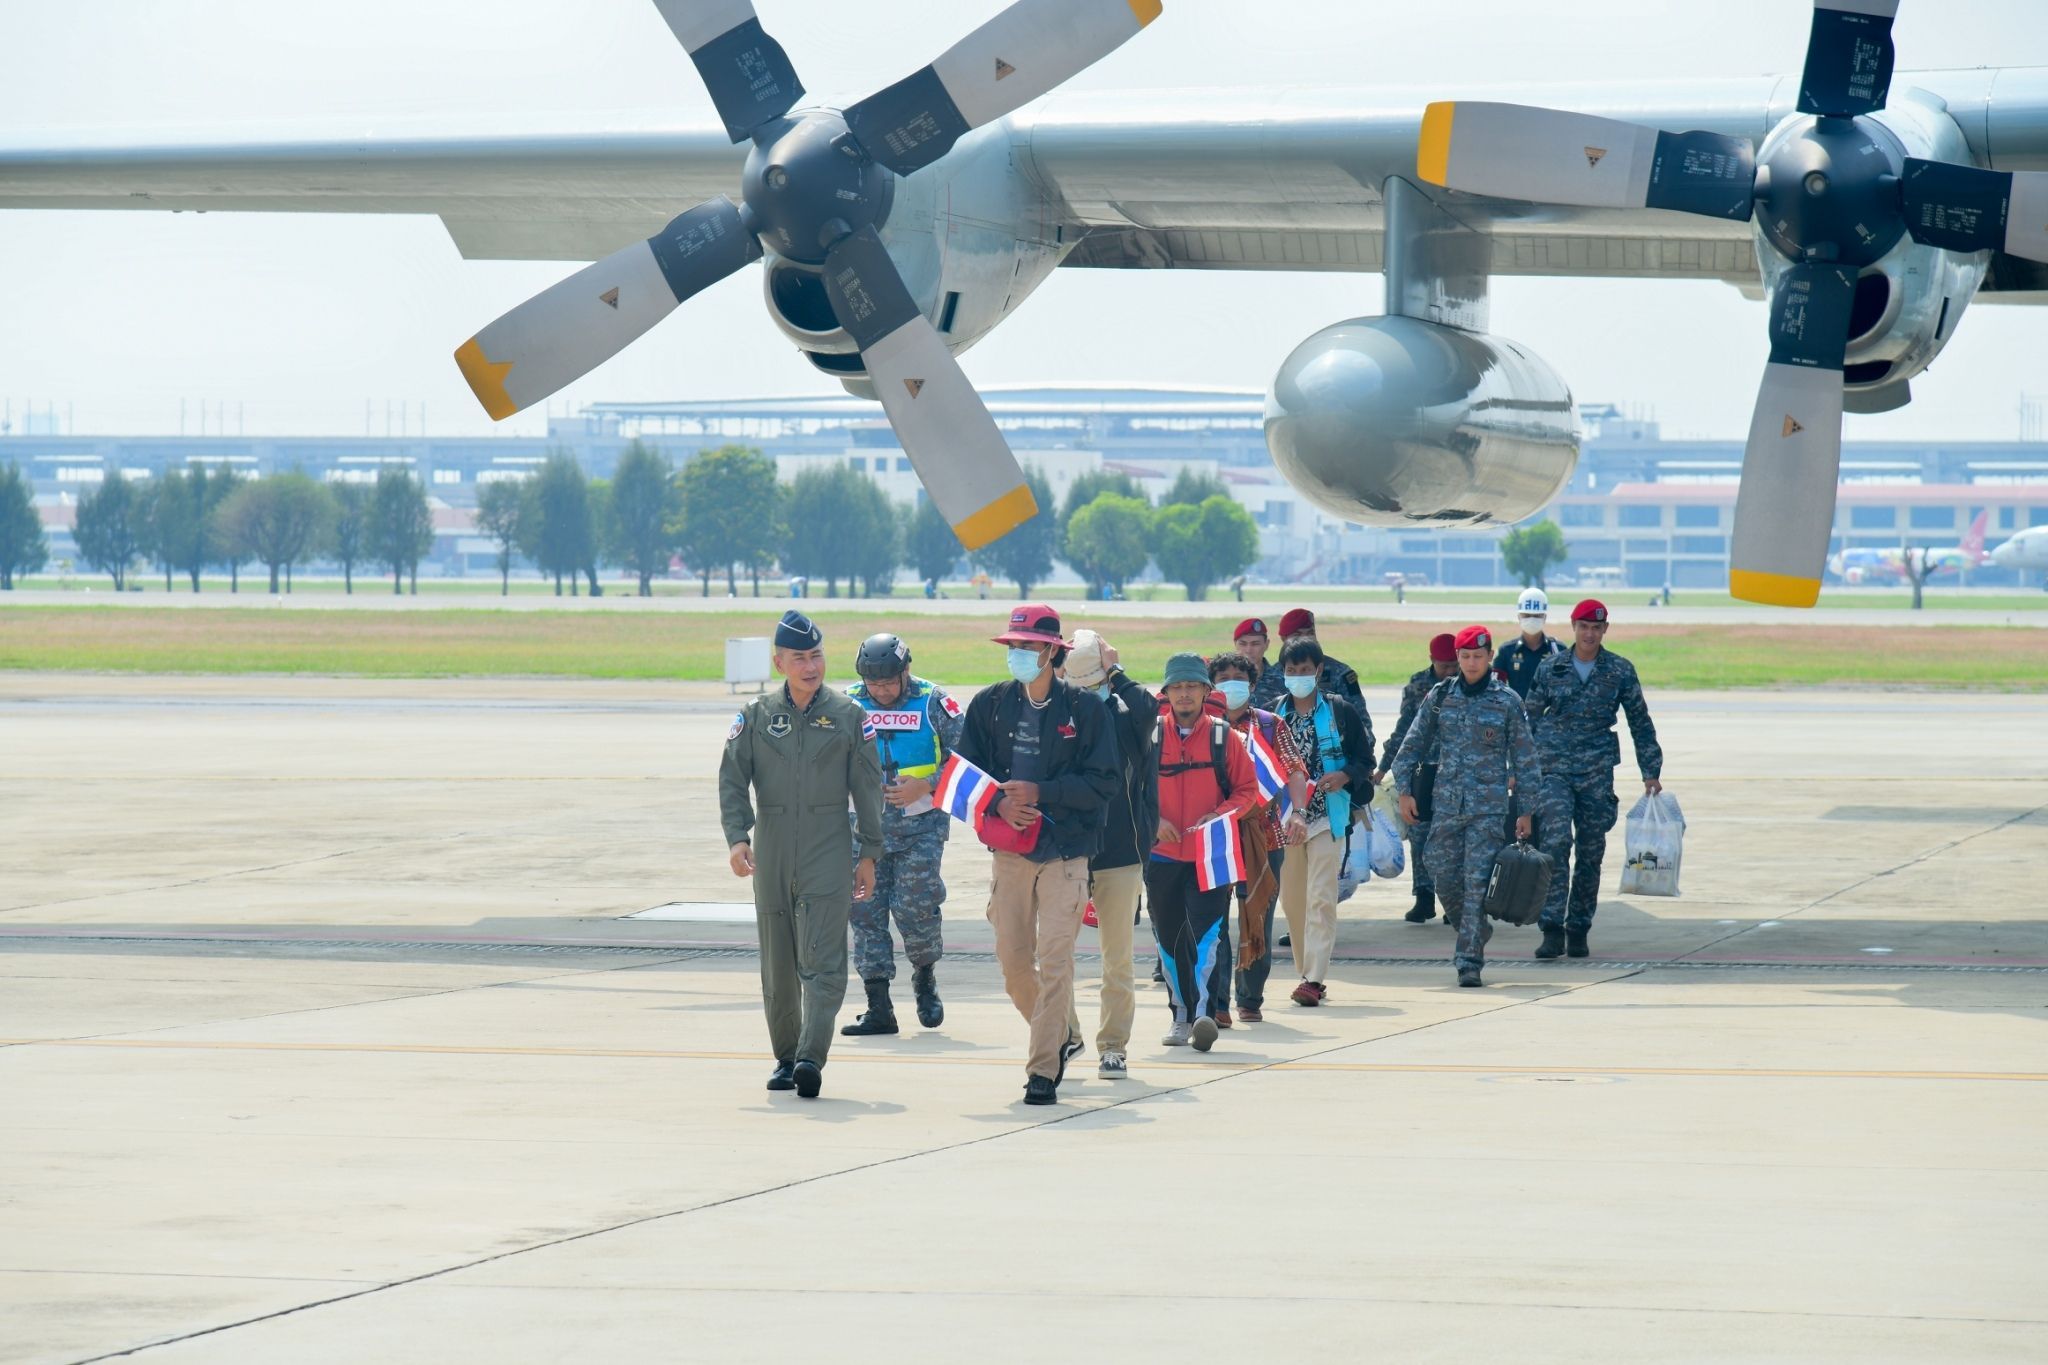 เสร็จสิ้นปฏิบัติการ "นภารักไทย" ภารกิจพาคนไทยกลับบ้าน... เครื่องบิน C-130 ของกองทัพอากาศ พร้อมคนไทย 5 คนสุดท้าย กลับถึงไทยเรียบร้อยแล้ว